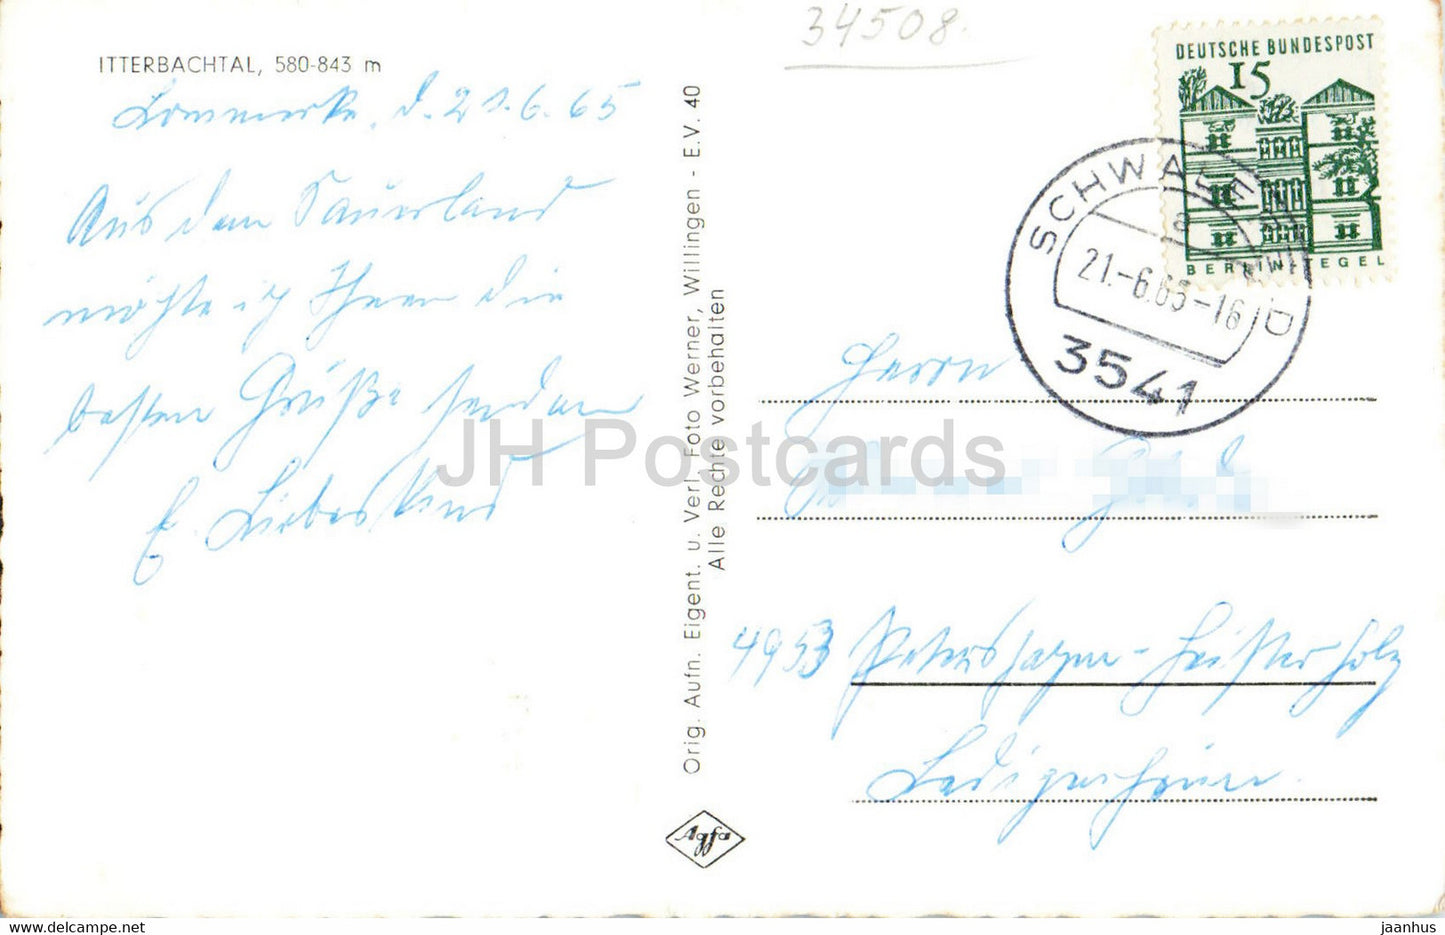 Itterbachtal 580.843 m - alte Postkarte - 1965 - Deutschland - gebraucht